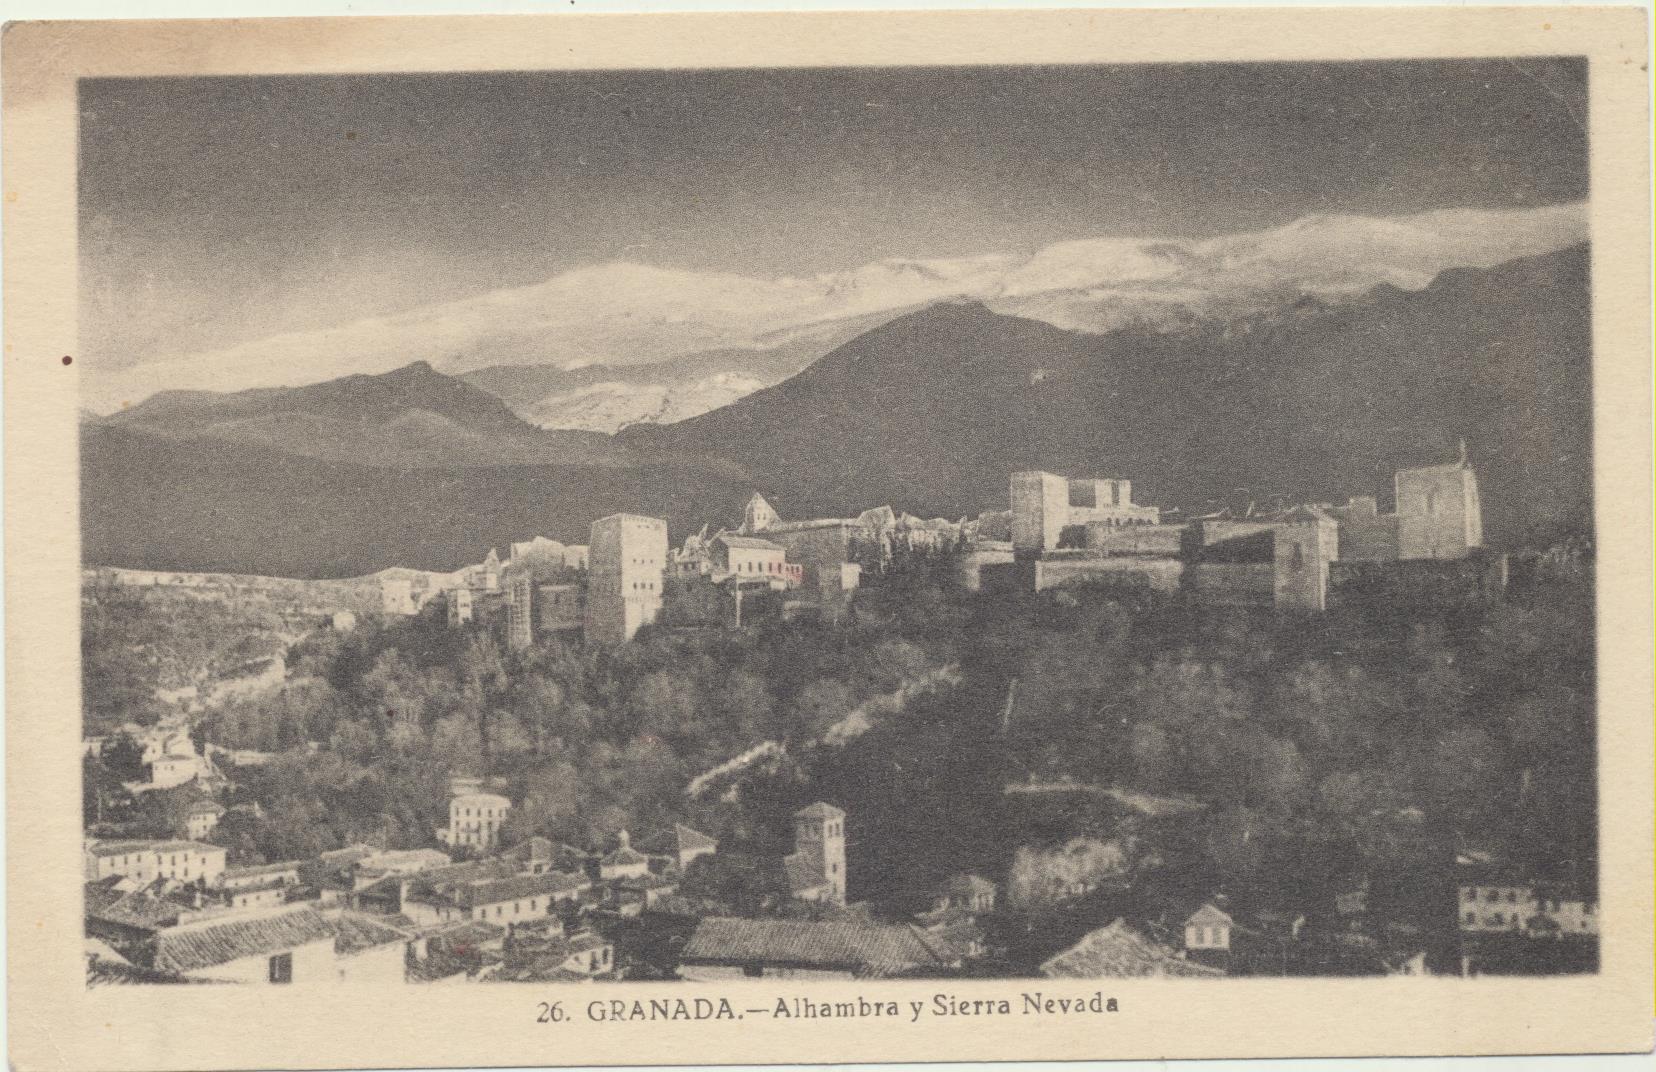 Granada - Alhambra y Sierra Nevada. De Huétor Santillán a Aracena del 9-1947. Bonito franqueo al dorso